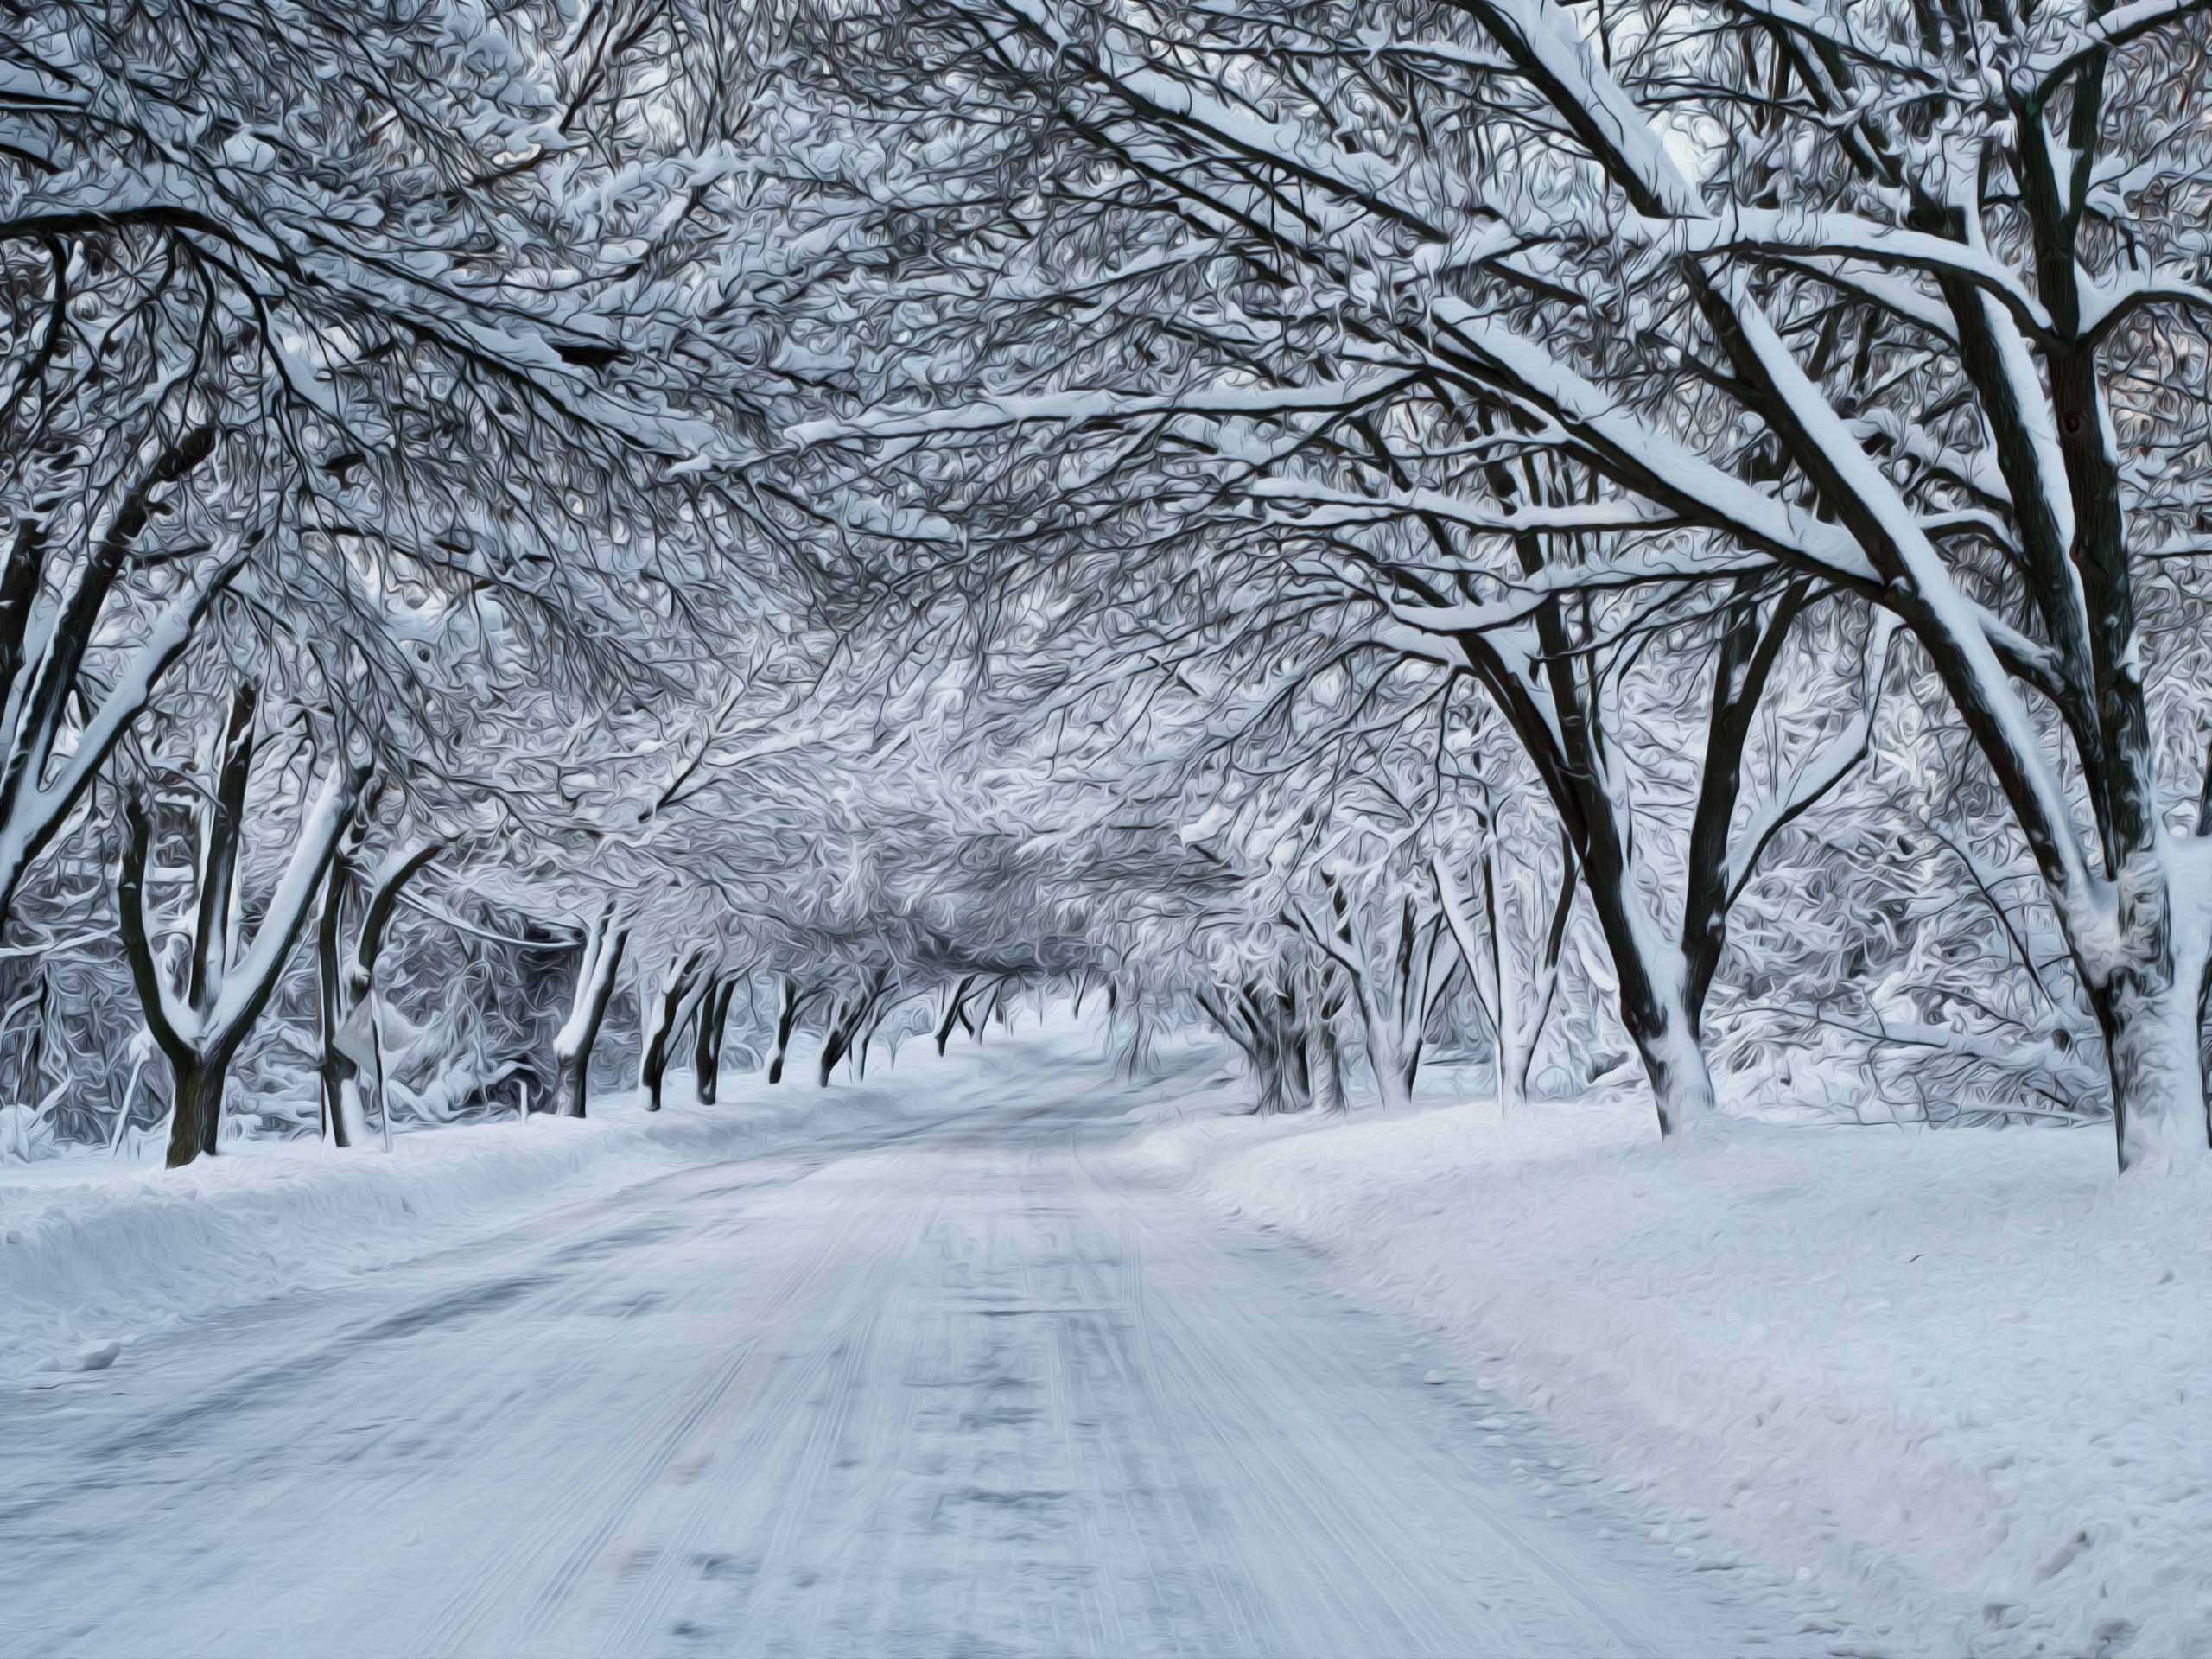 Winter Snow Scenes Vector Download 2560x1920